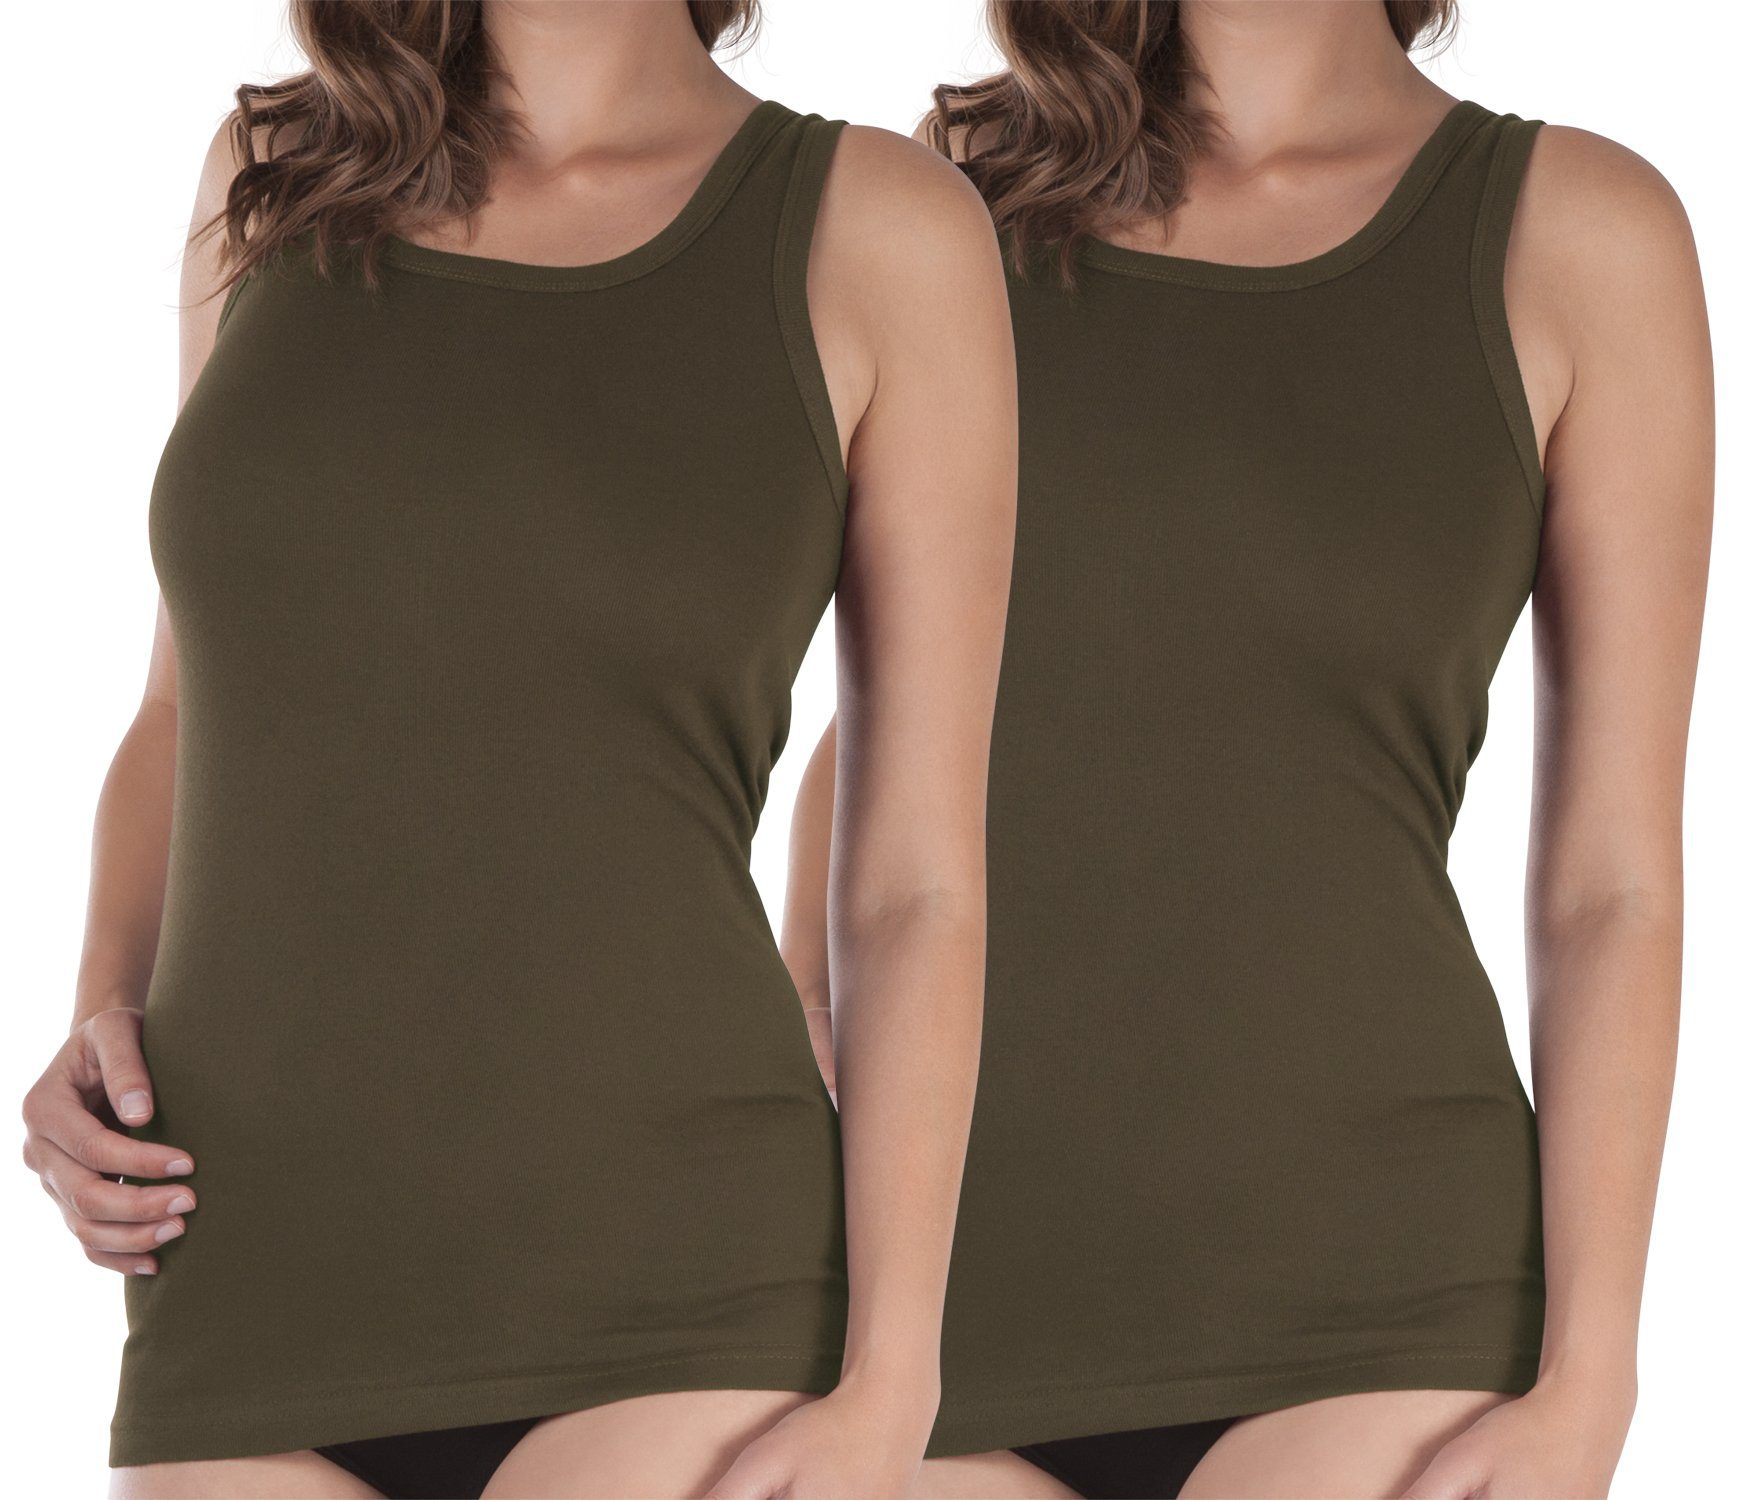 celodoro Unterhemd Damen Longshirt (1er, 2er oder 4er Pack) Feinripp Unterhemd 2 x Olive